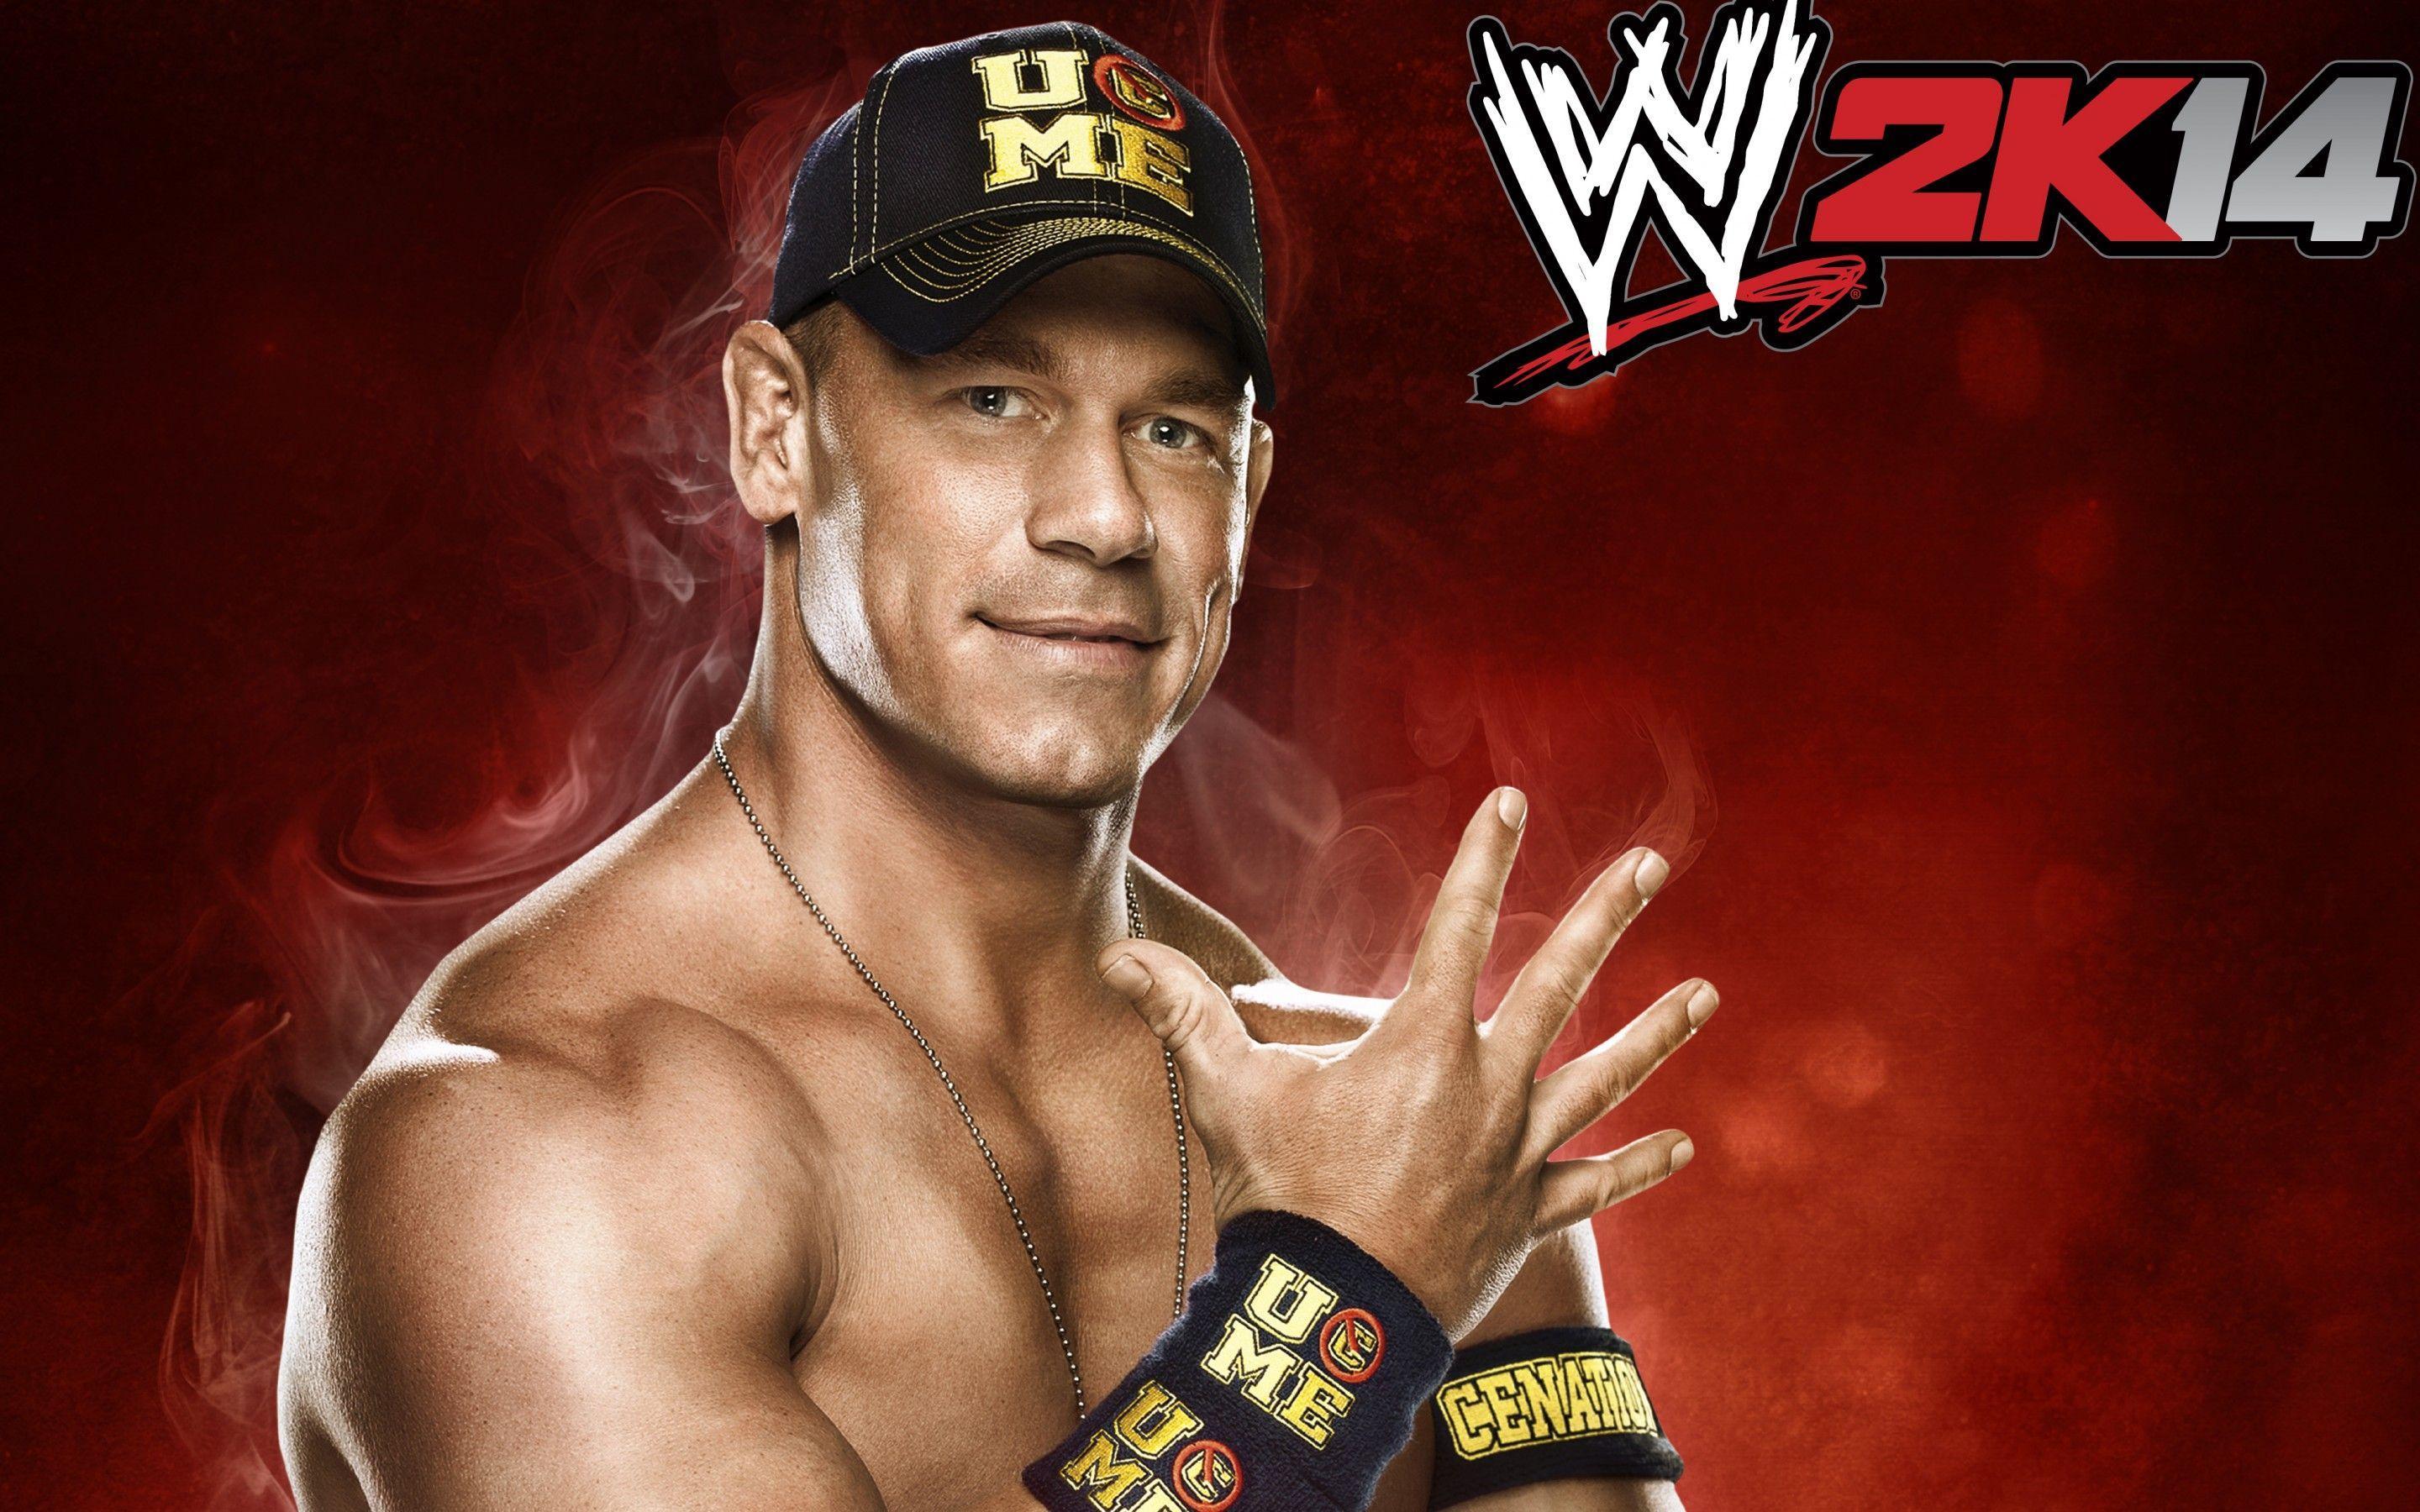 John Cena WWE 2K14 Wallpaper 2880x1800 px Free Download